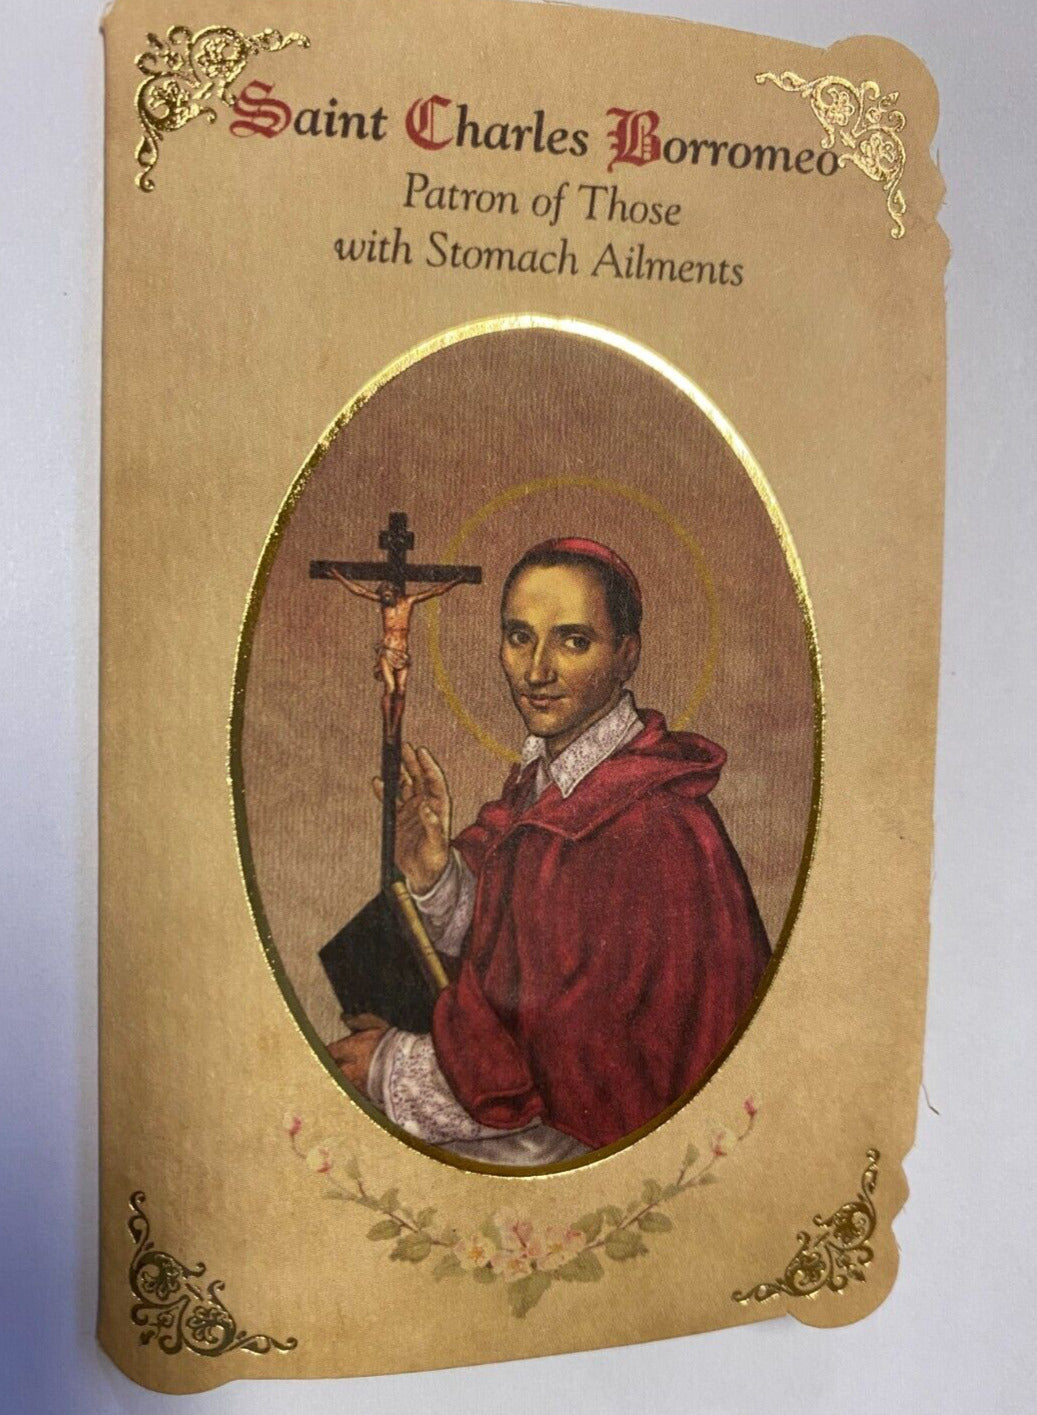 Saint Charles Borromeo, Prayer Card & Medal, New